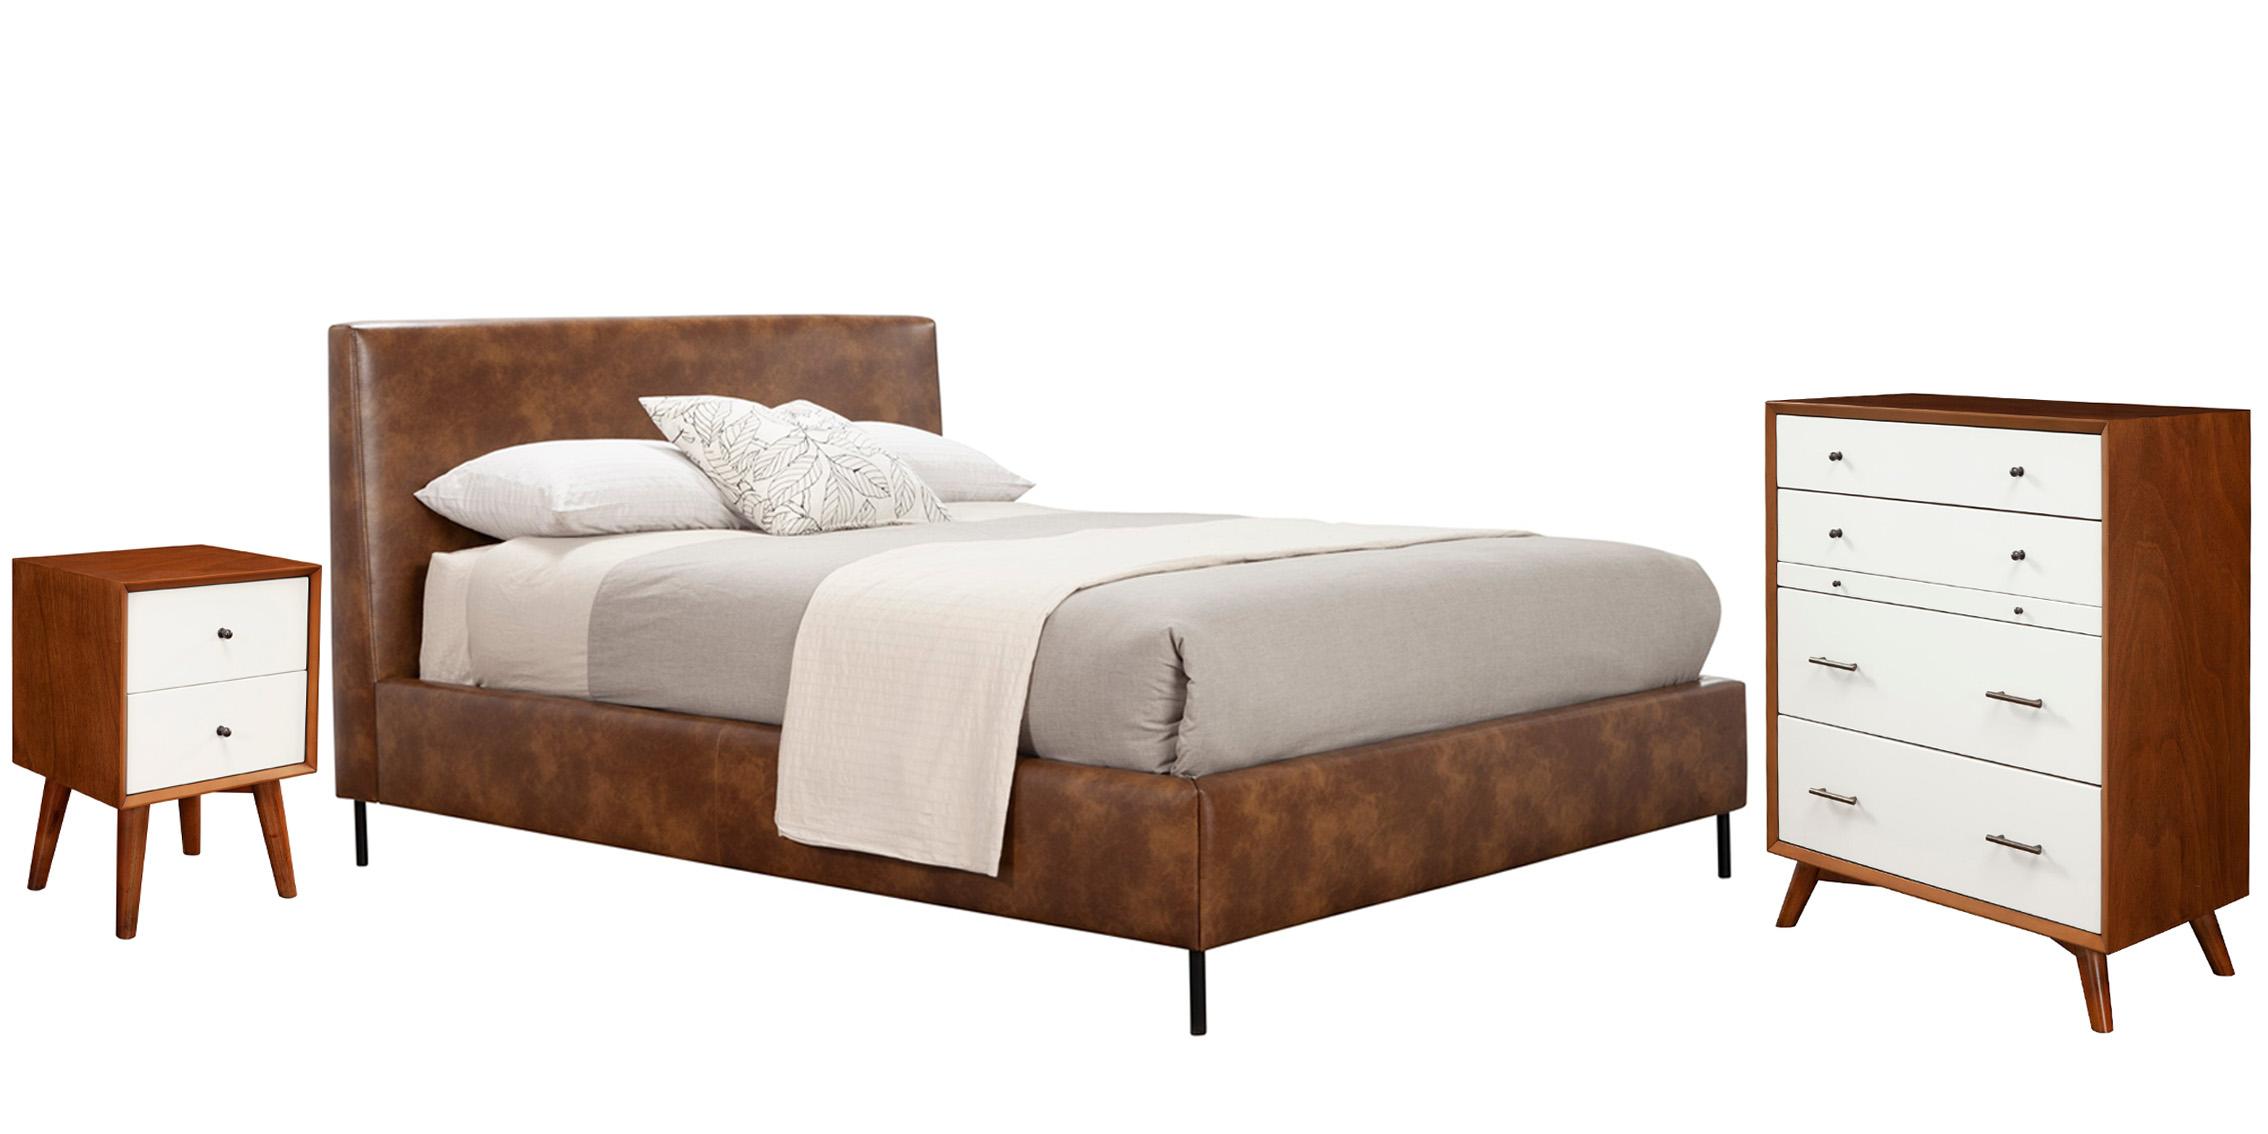 Modern, Rustic Platform Bedroom Set SOPHIA/FLYNN 6902EK-BRN-Set-3 in Brown Faux Leather